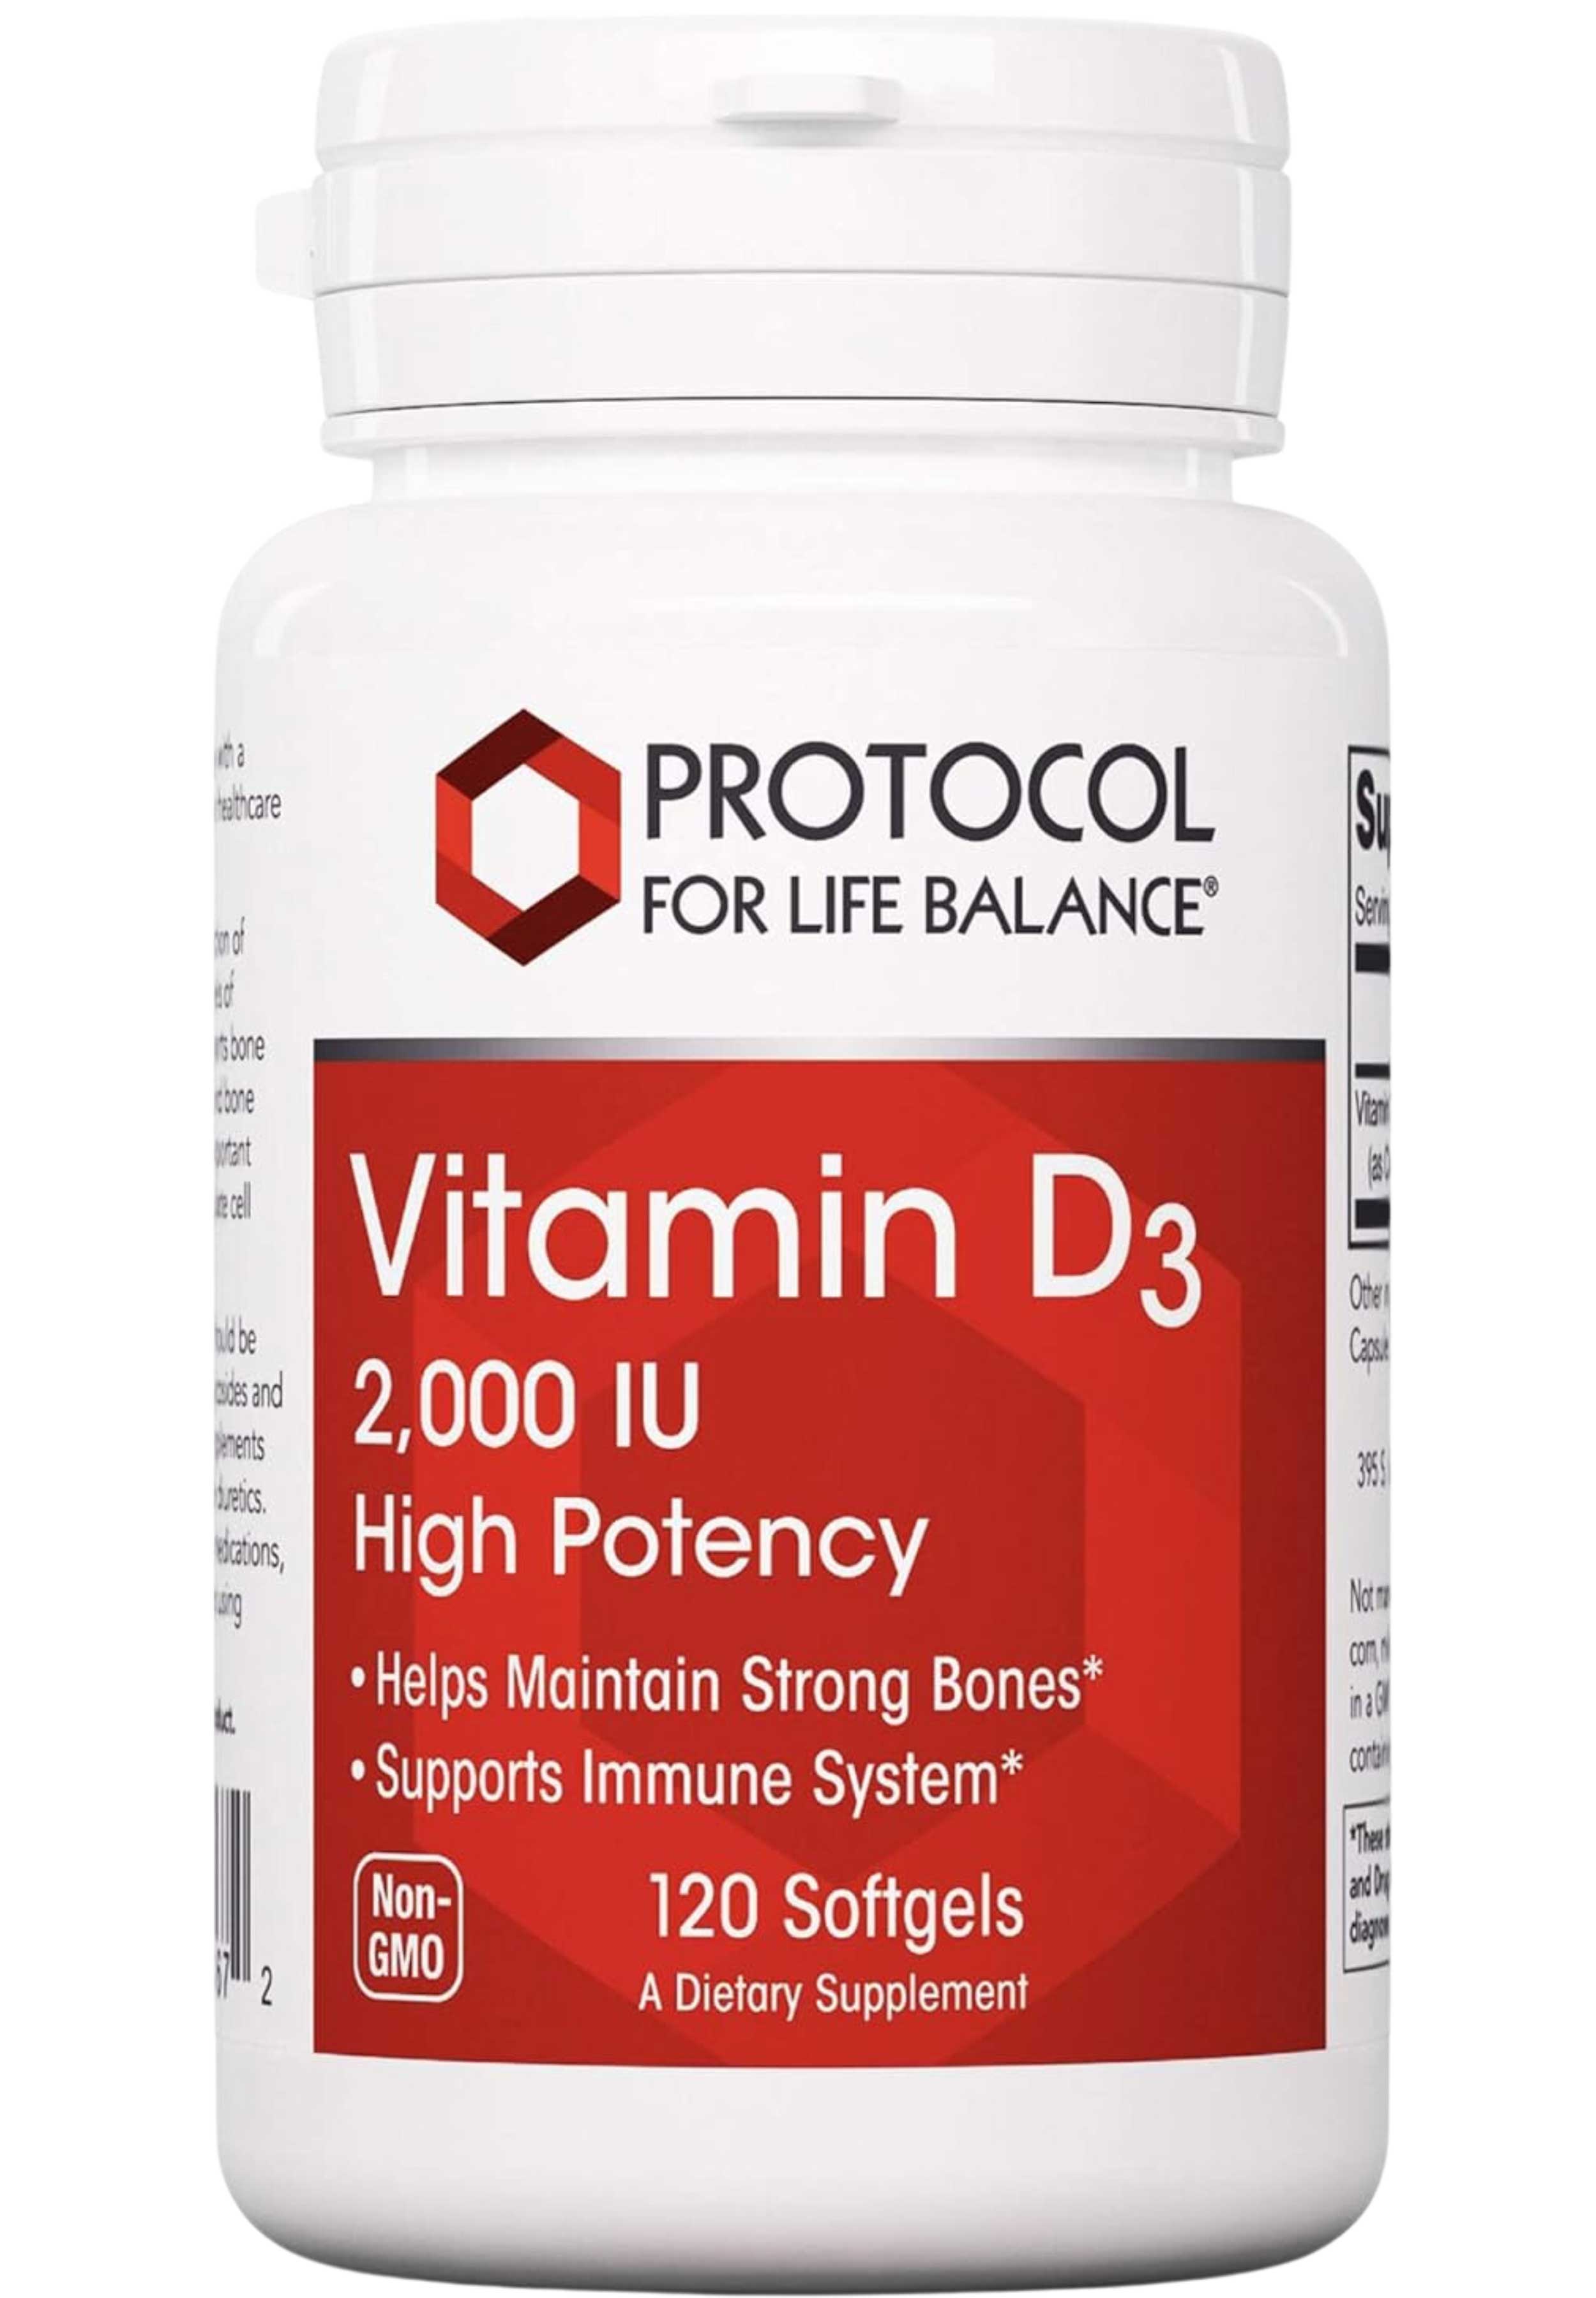 Protocol For Life Balance Vitamin D3 2,000 IU